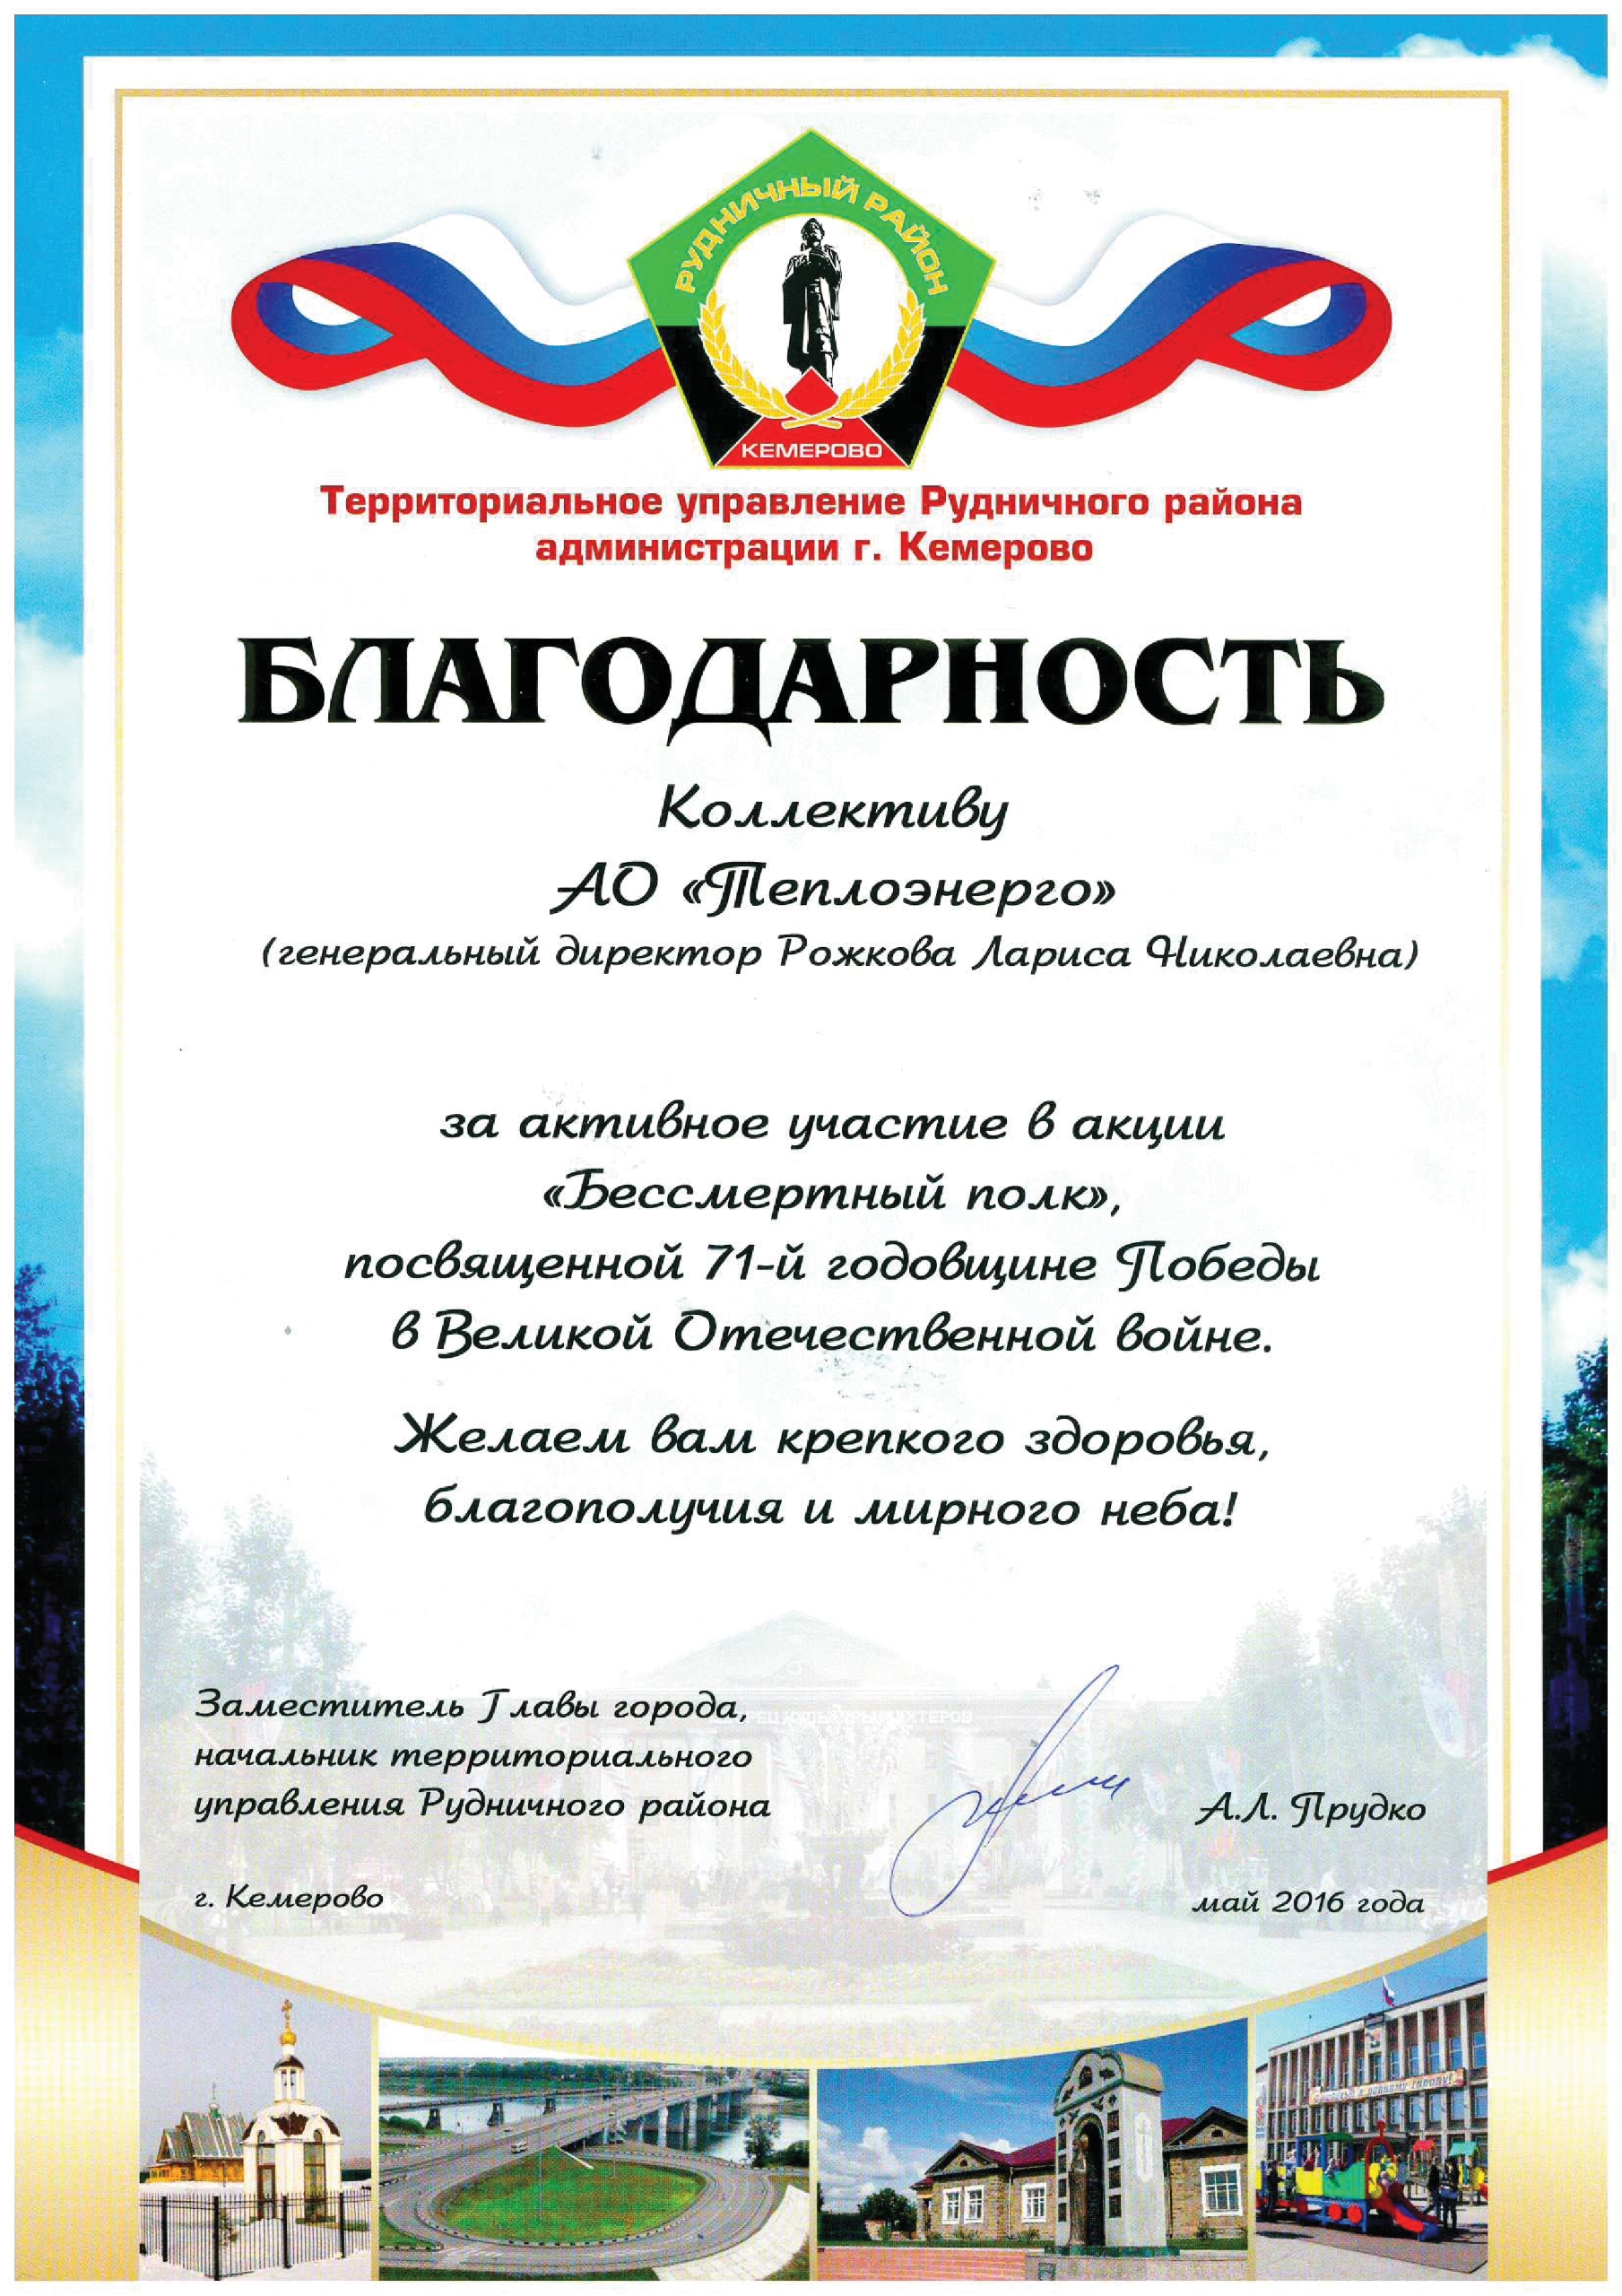 Благодарность от Территориального управления Рудничного района, г. Кемерово, 2016 г.